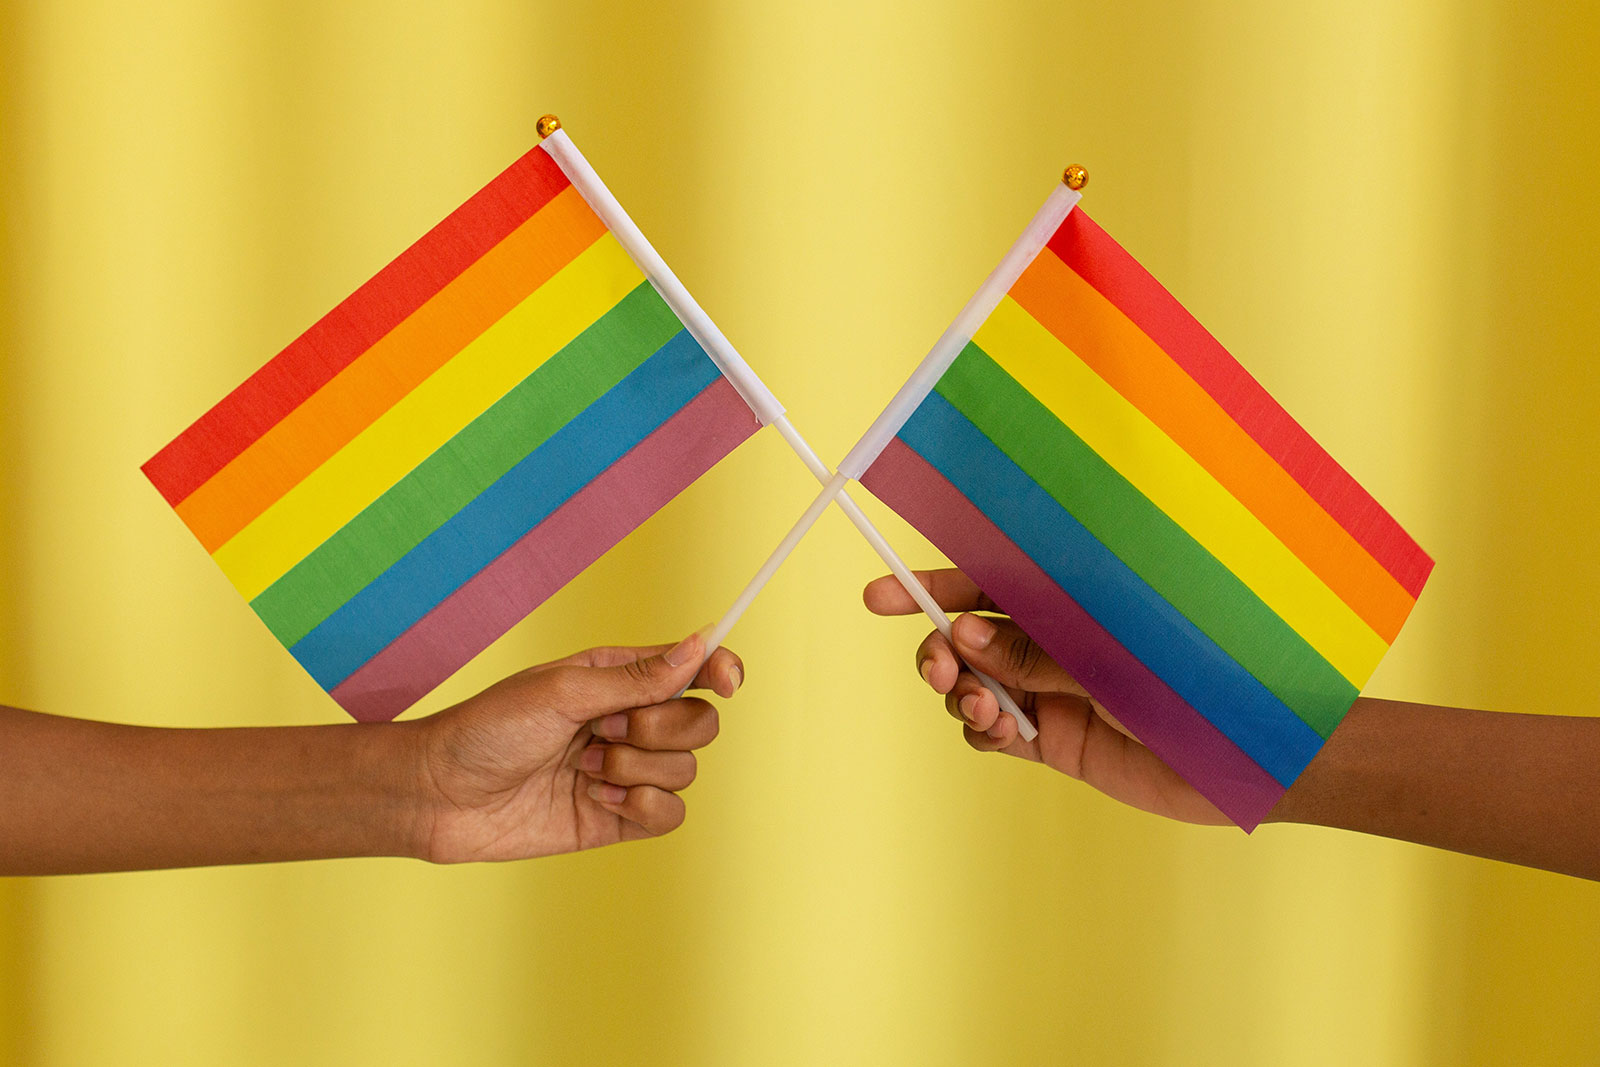 Bandeiras do orgulho LGBTQIA+